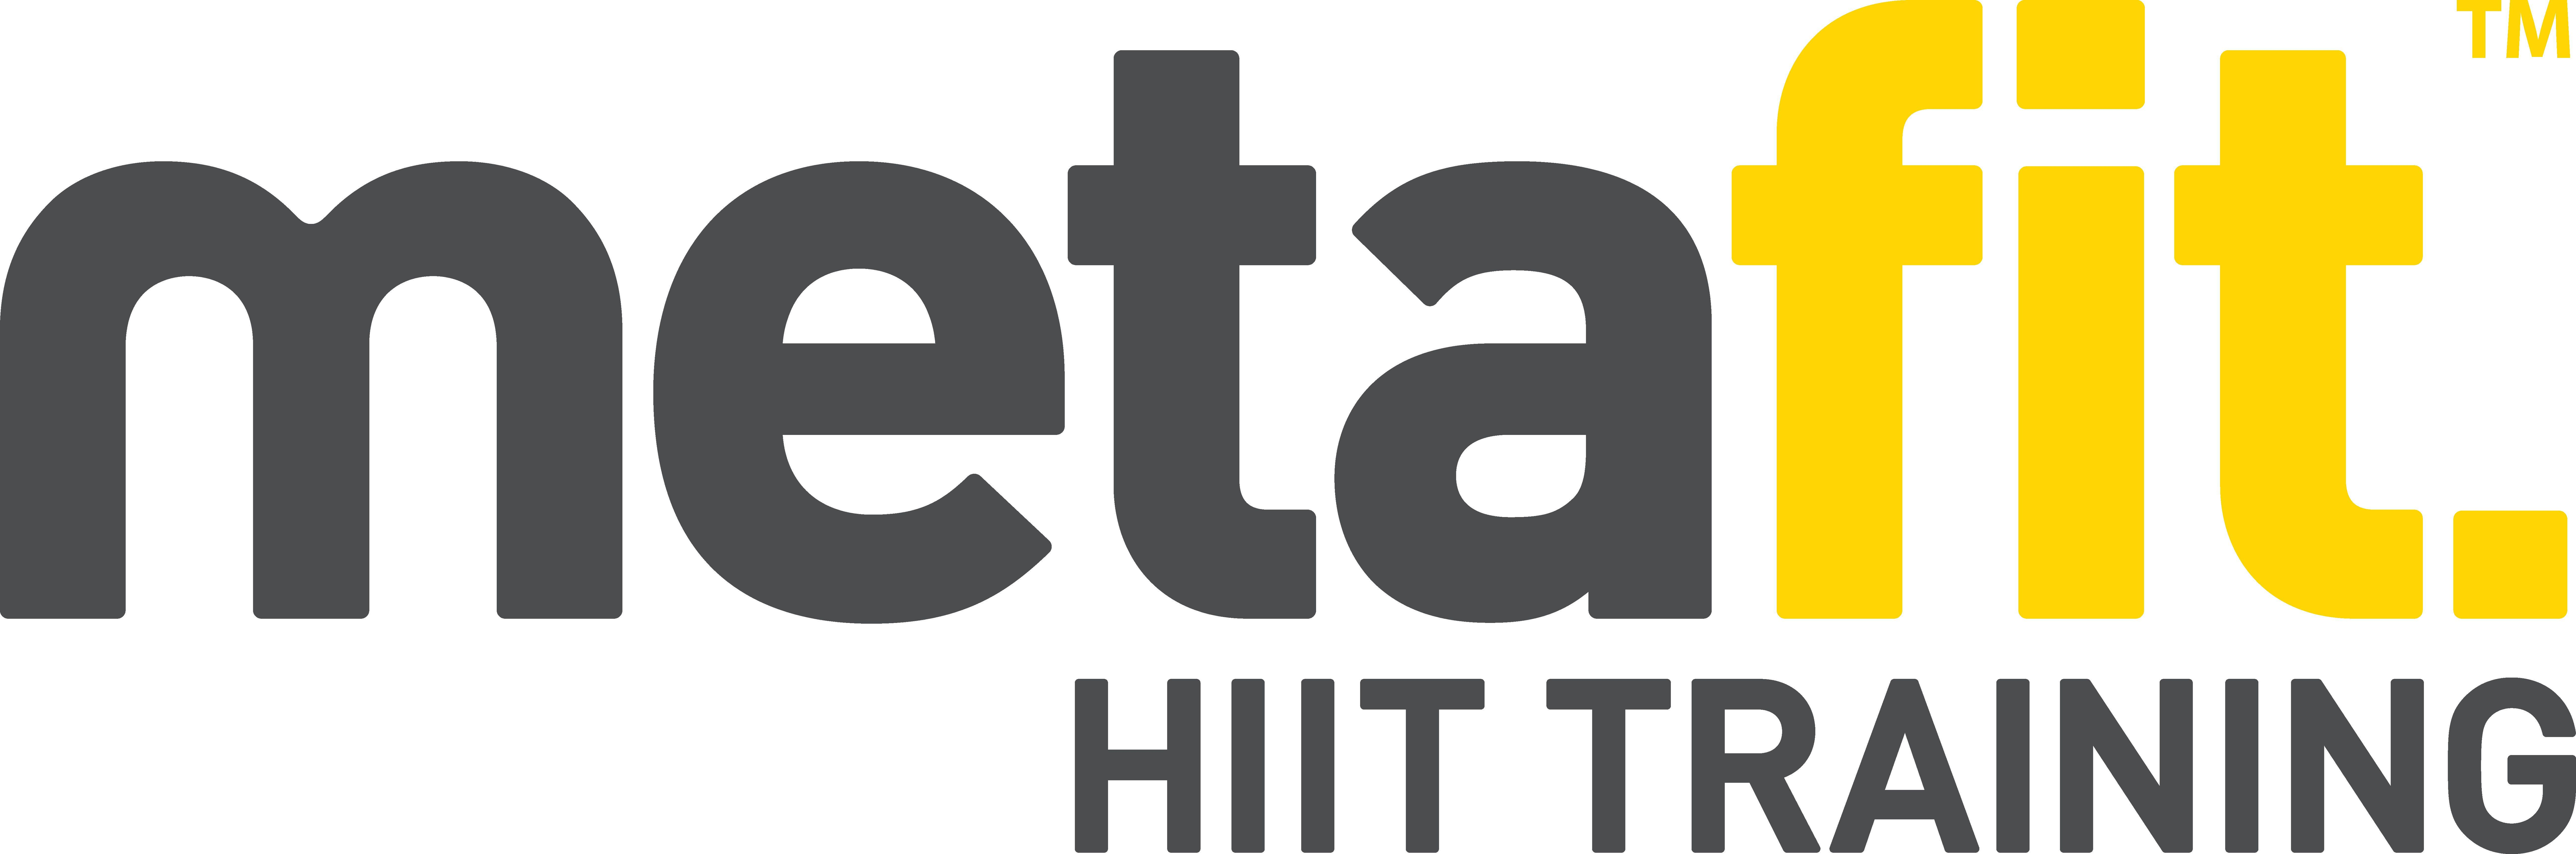 HIIT Logo - Metafit Logo HIIT